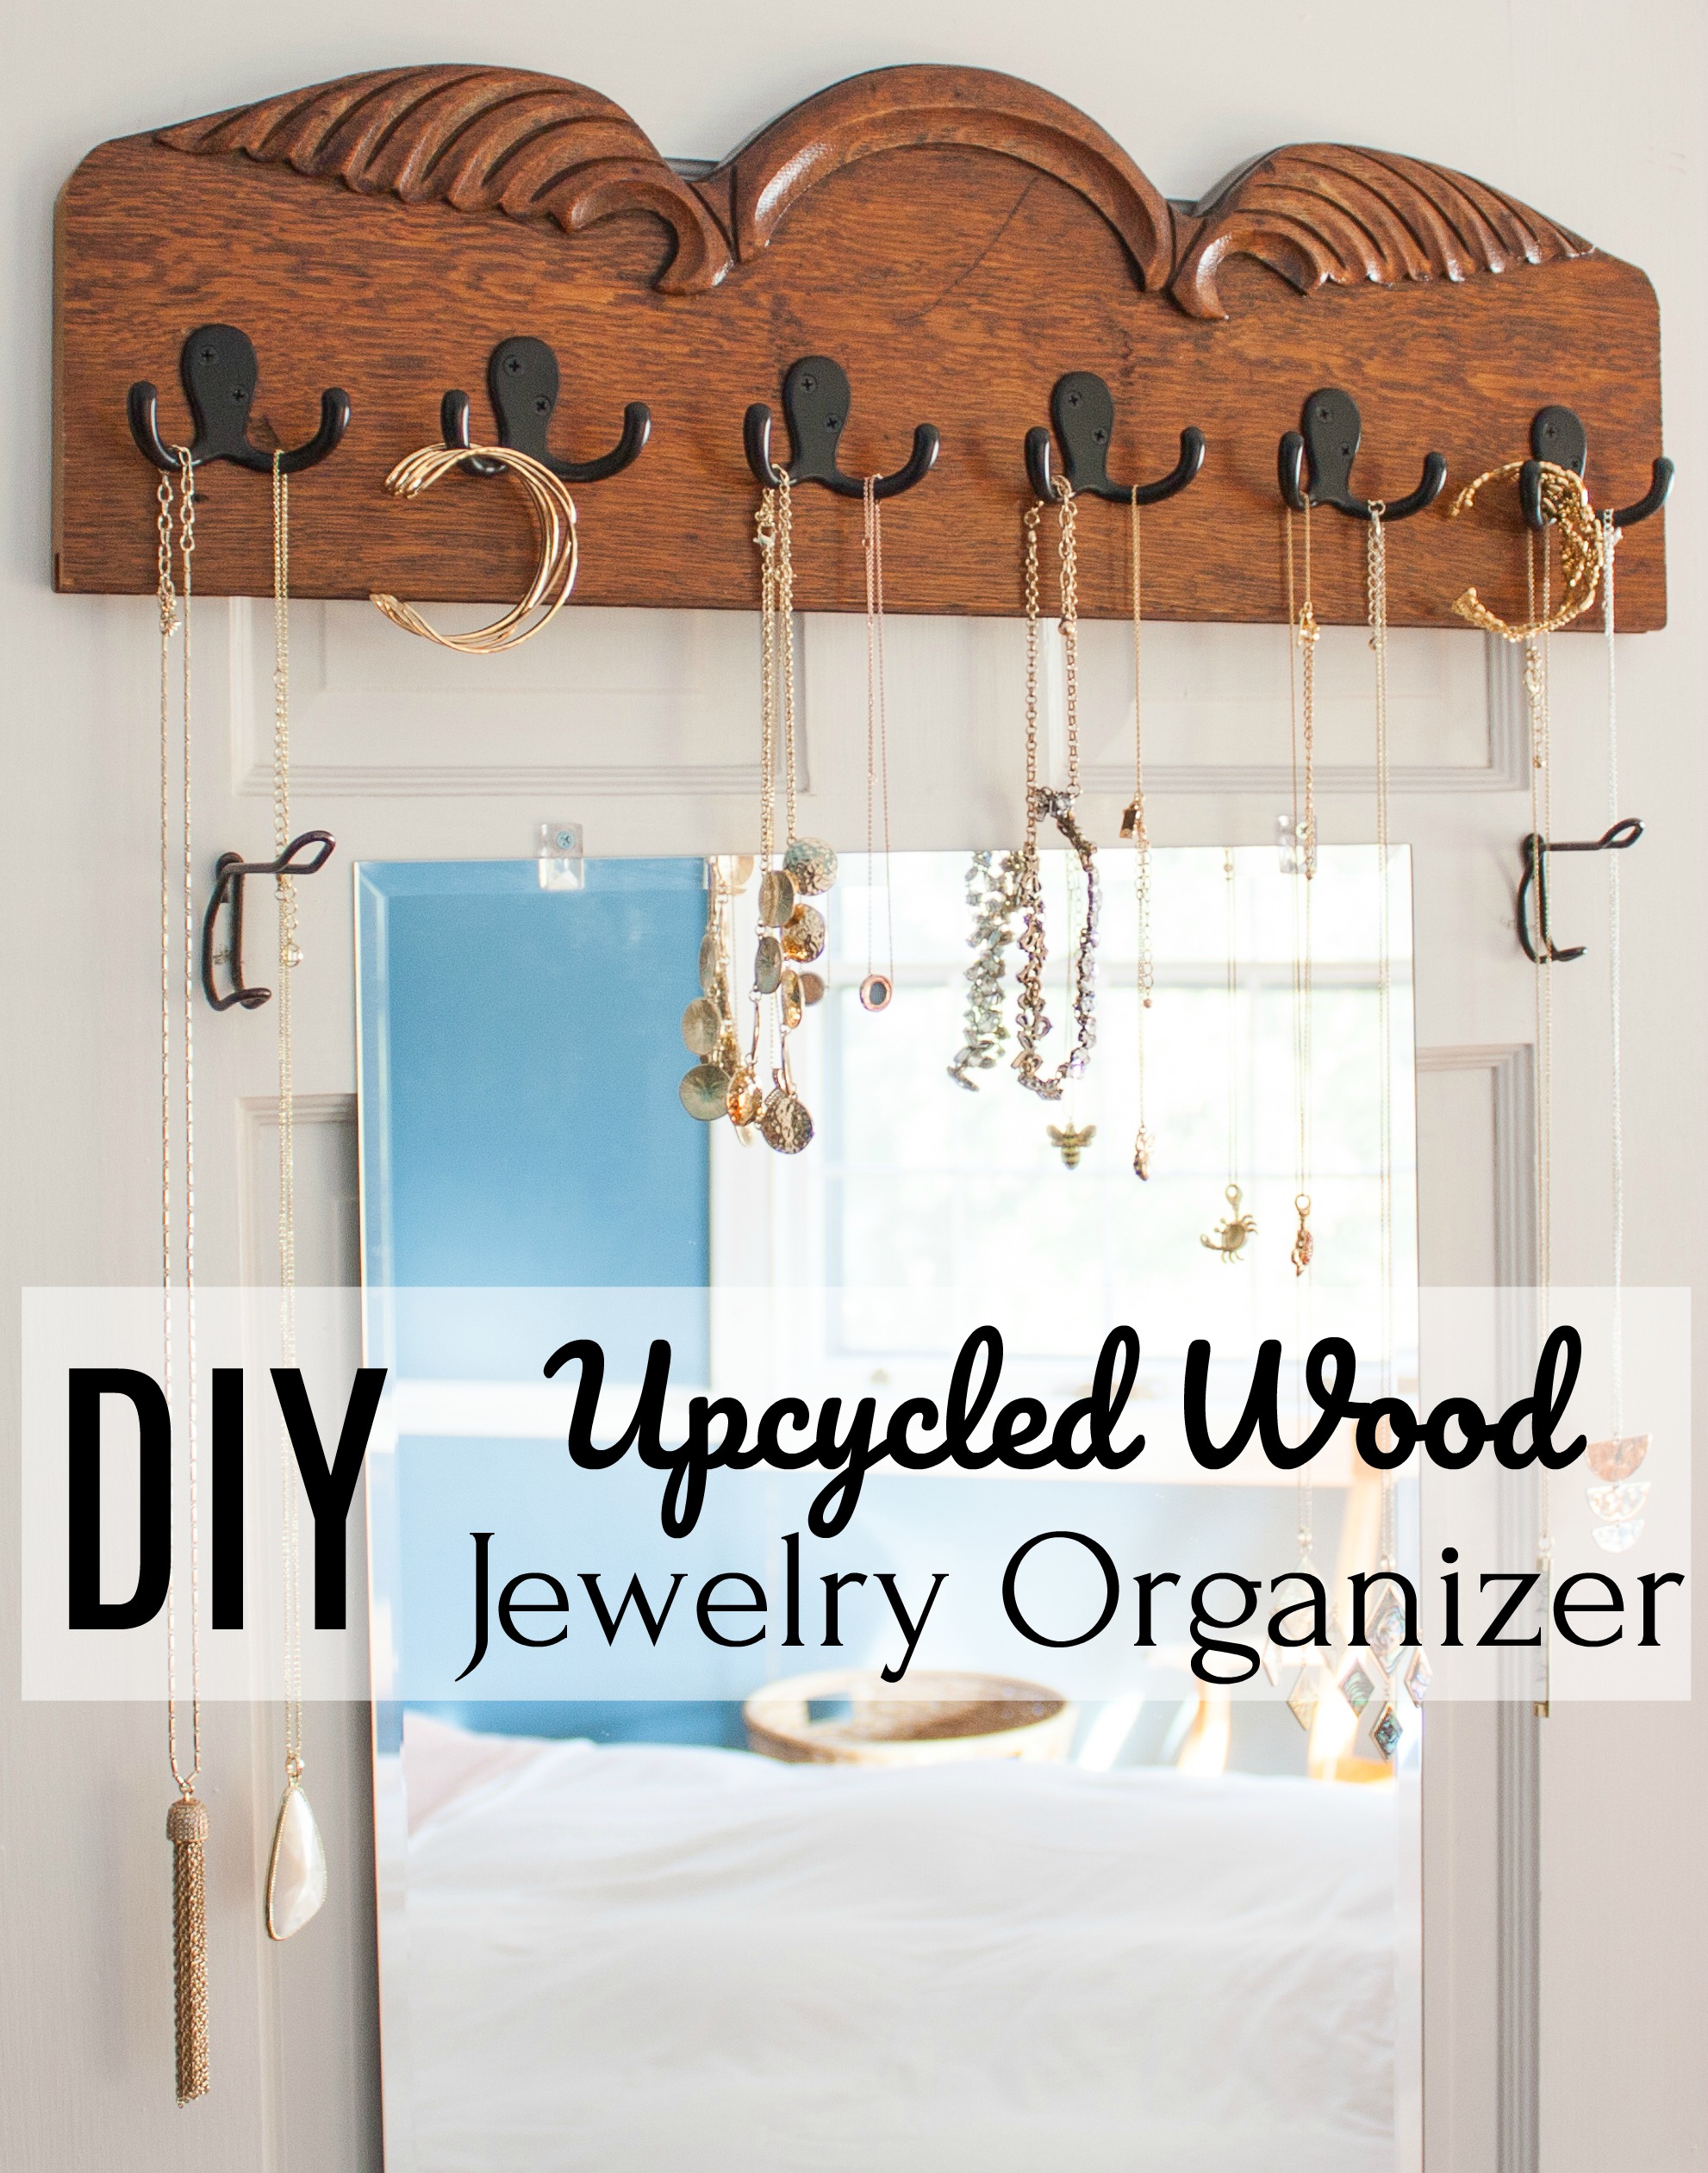 Wooden Jewelry Box, Jewelry Storage Organizer– NOVOGEARS